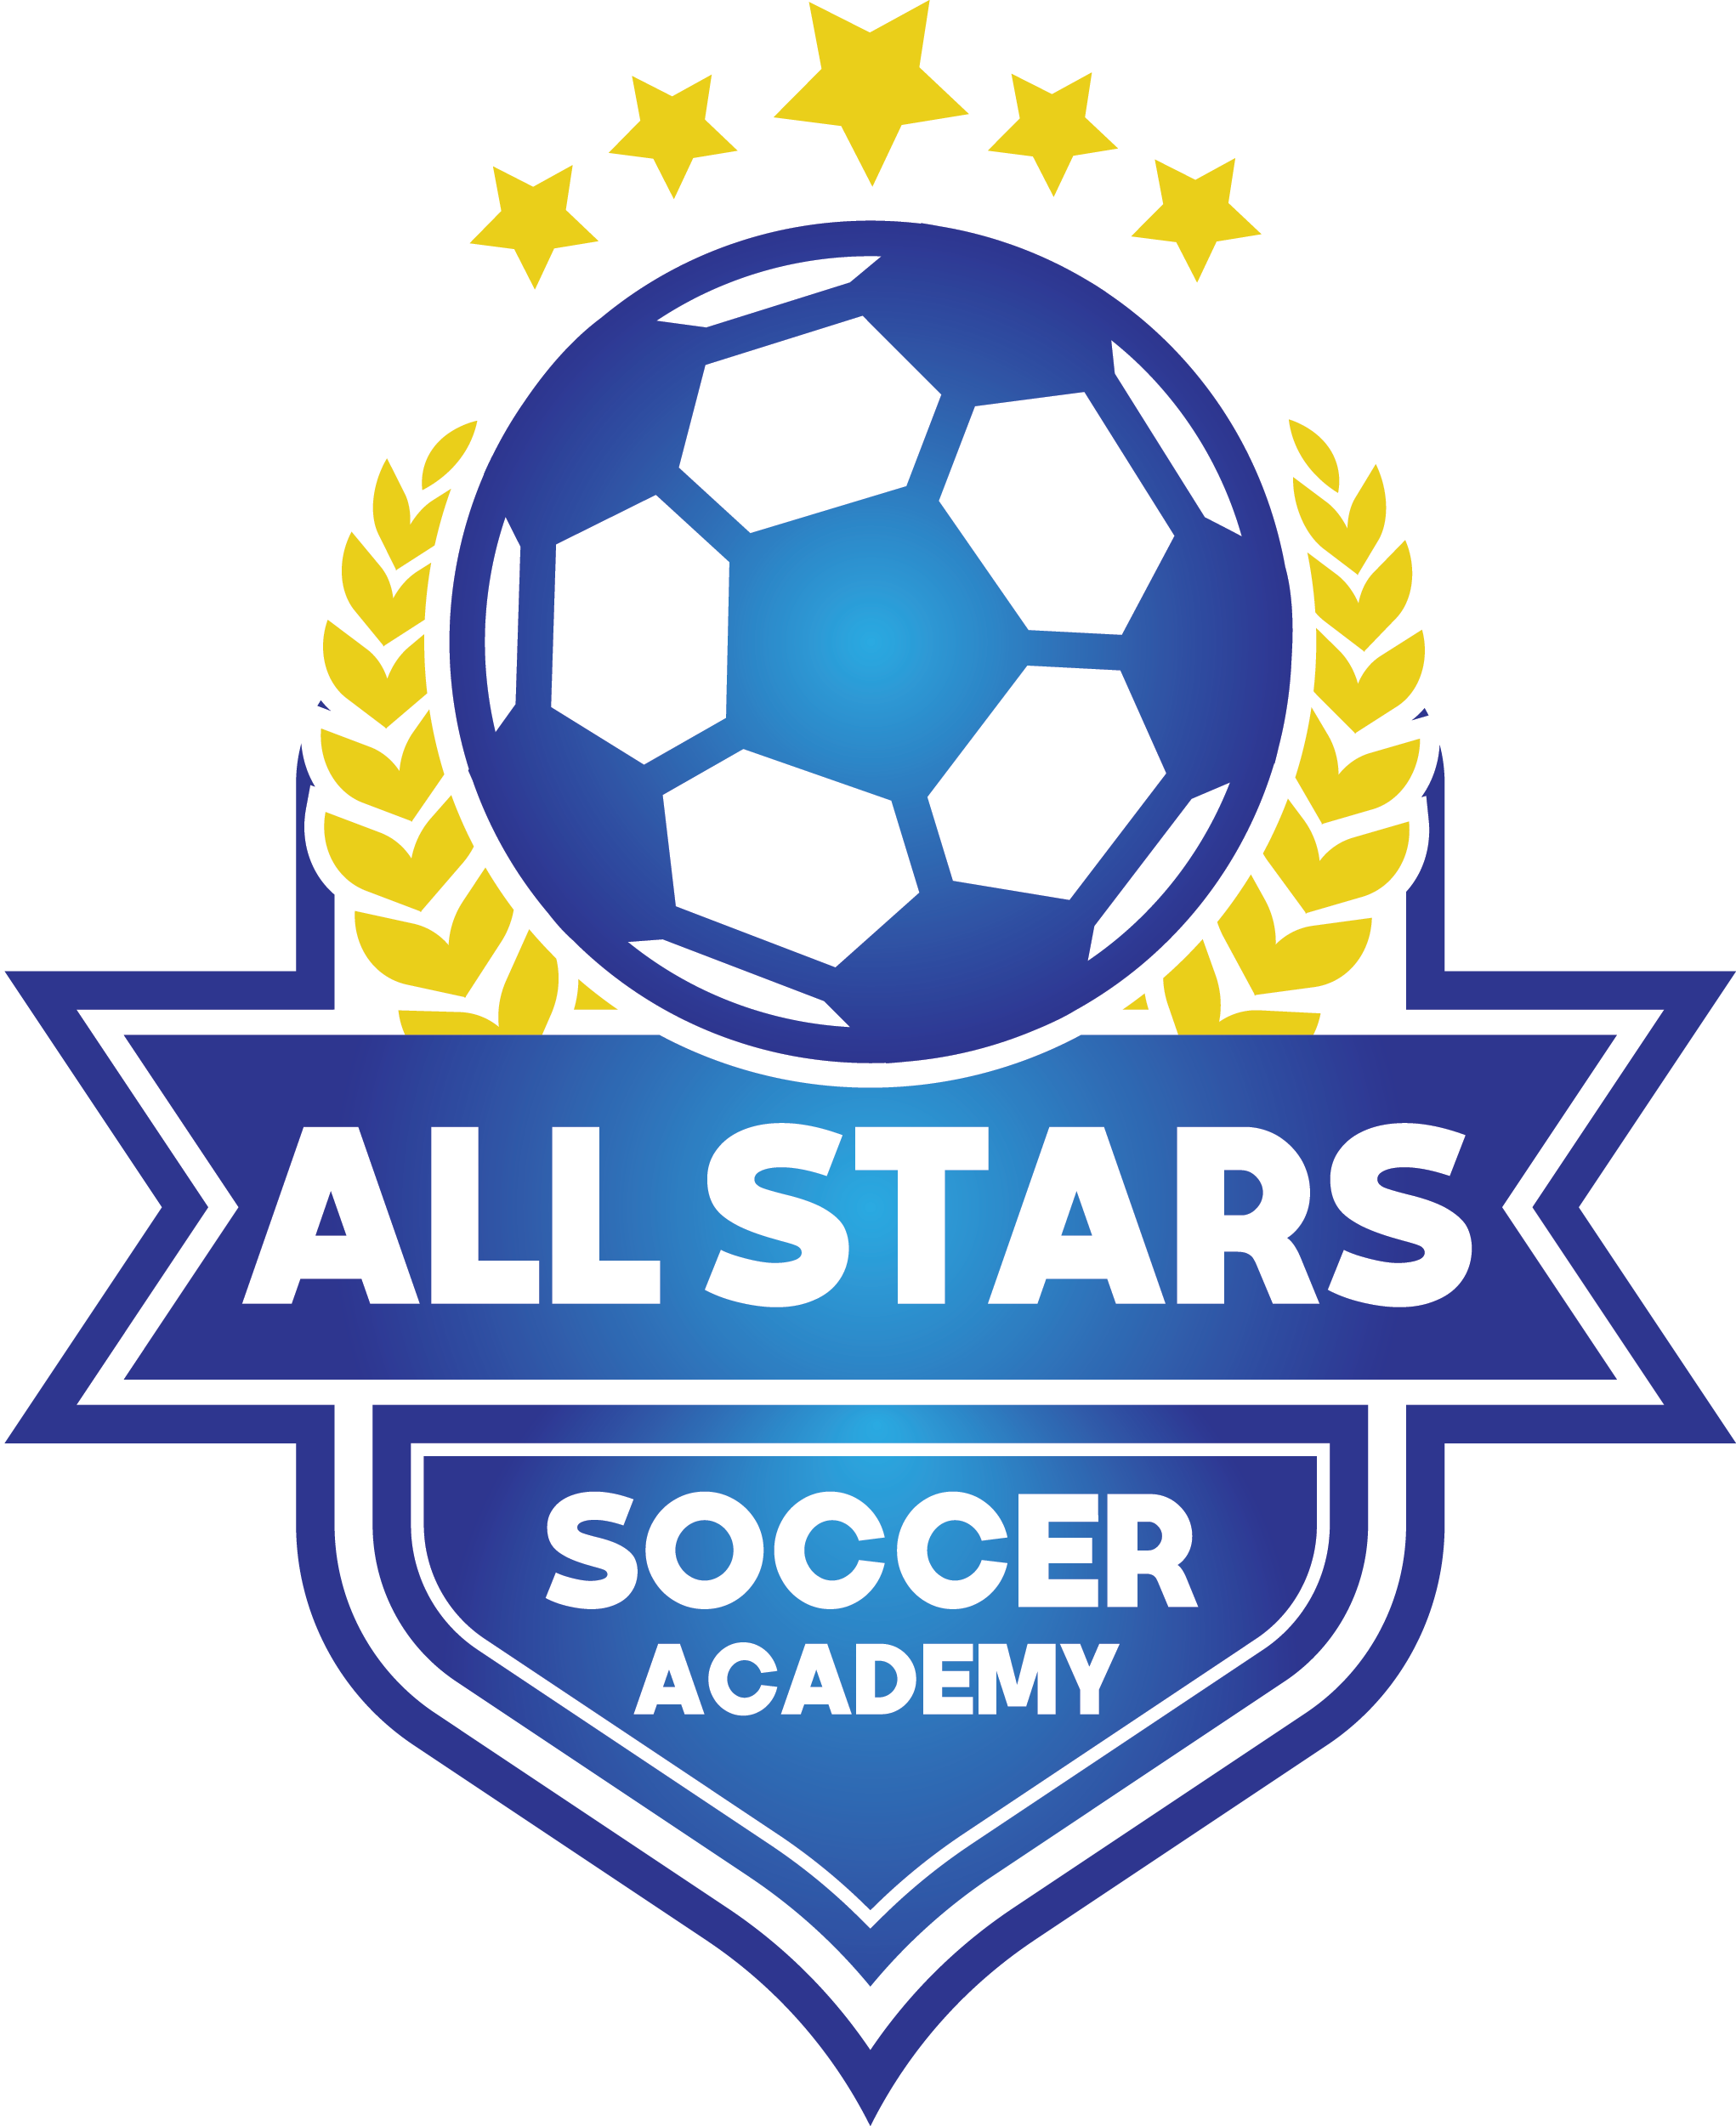 All Stars Soccer Academy